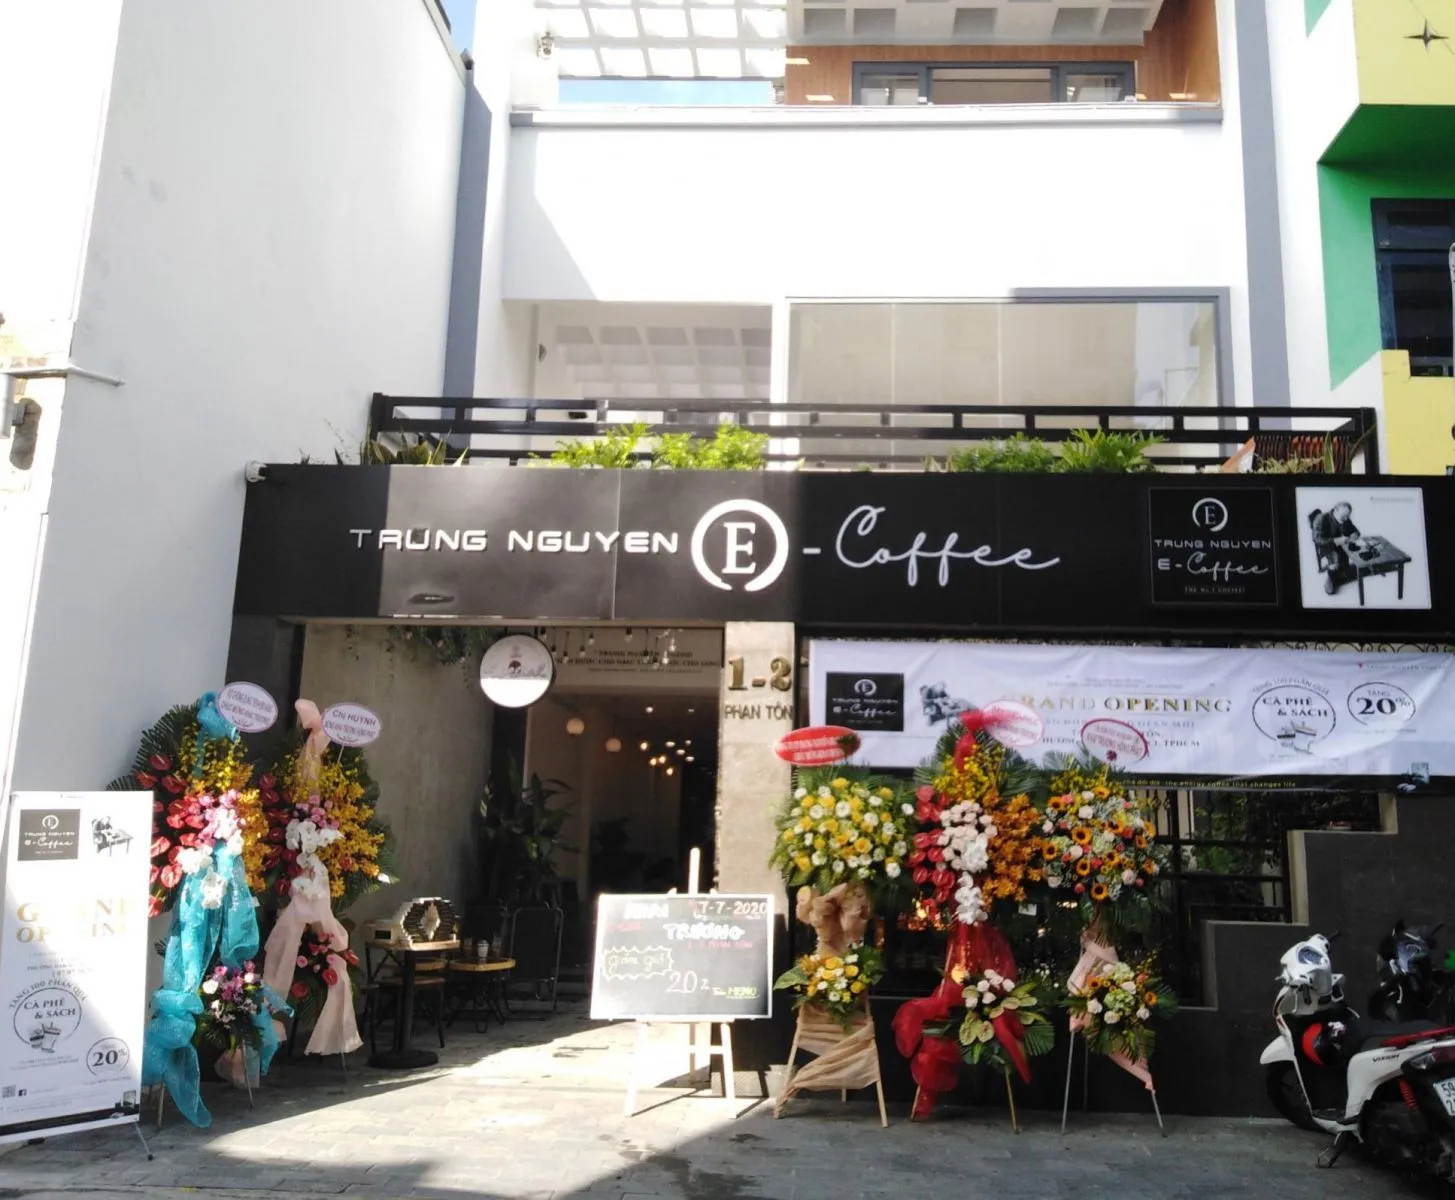 Thi công quán cà phê Trung Nguyên E Coffee Phan Tôn, Quận 1